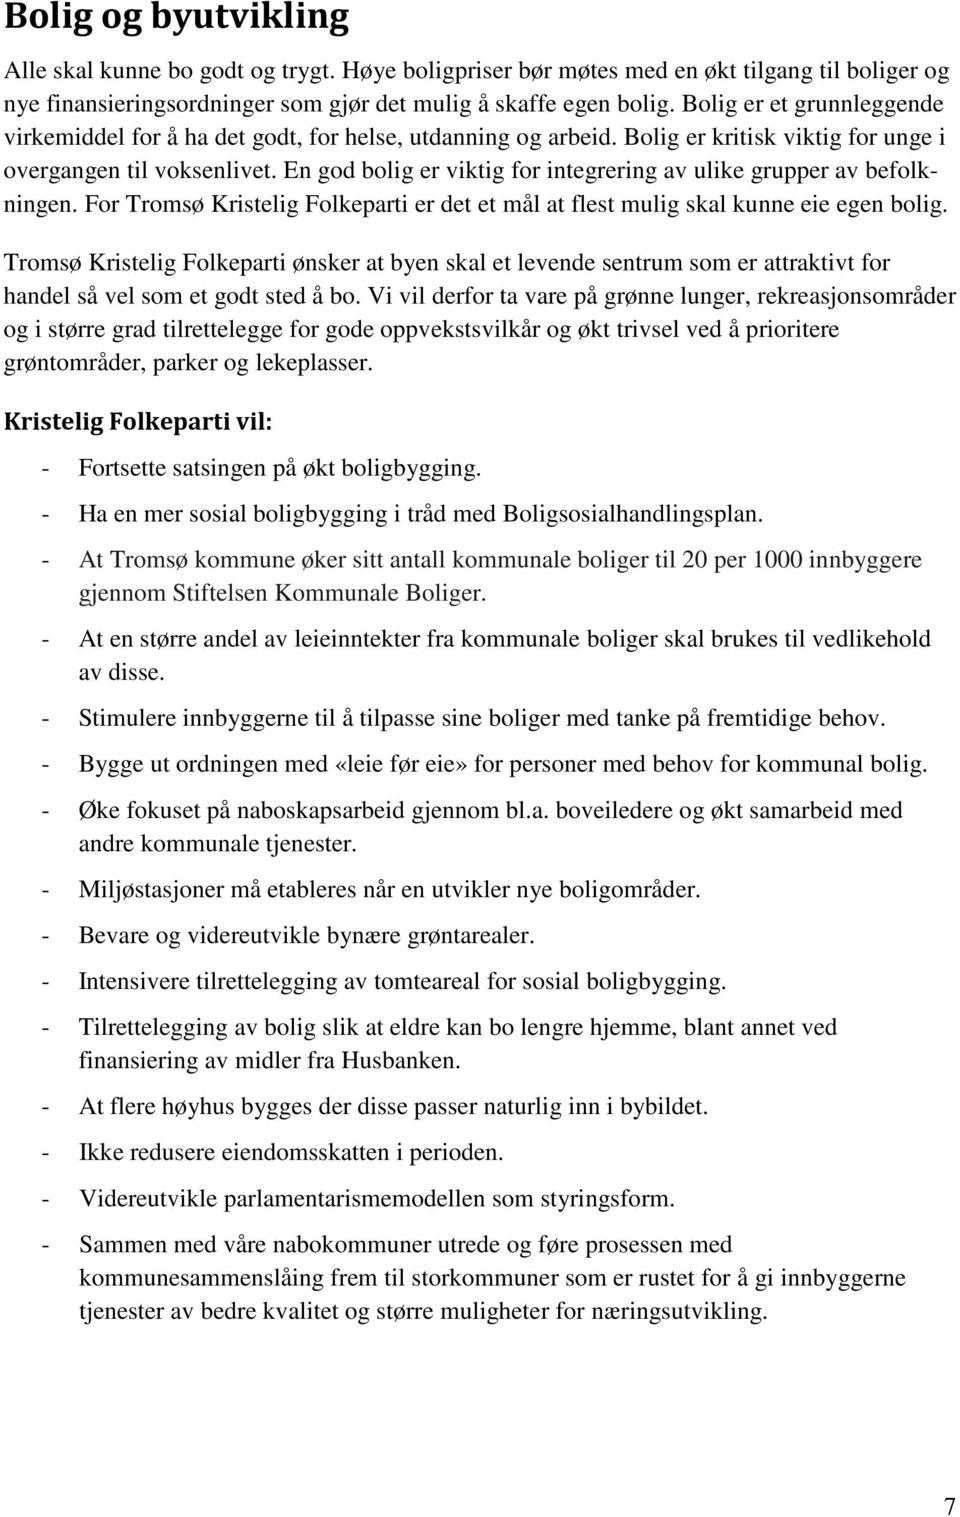 En god bolig er viktig for integrering av ulike grupper av befolkningen. For Tromsø Kristelig Folkeparti er det et mål at flest mulig skal kunne eie egen bolig.